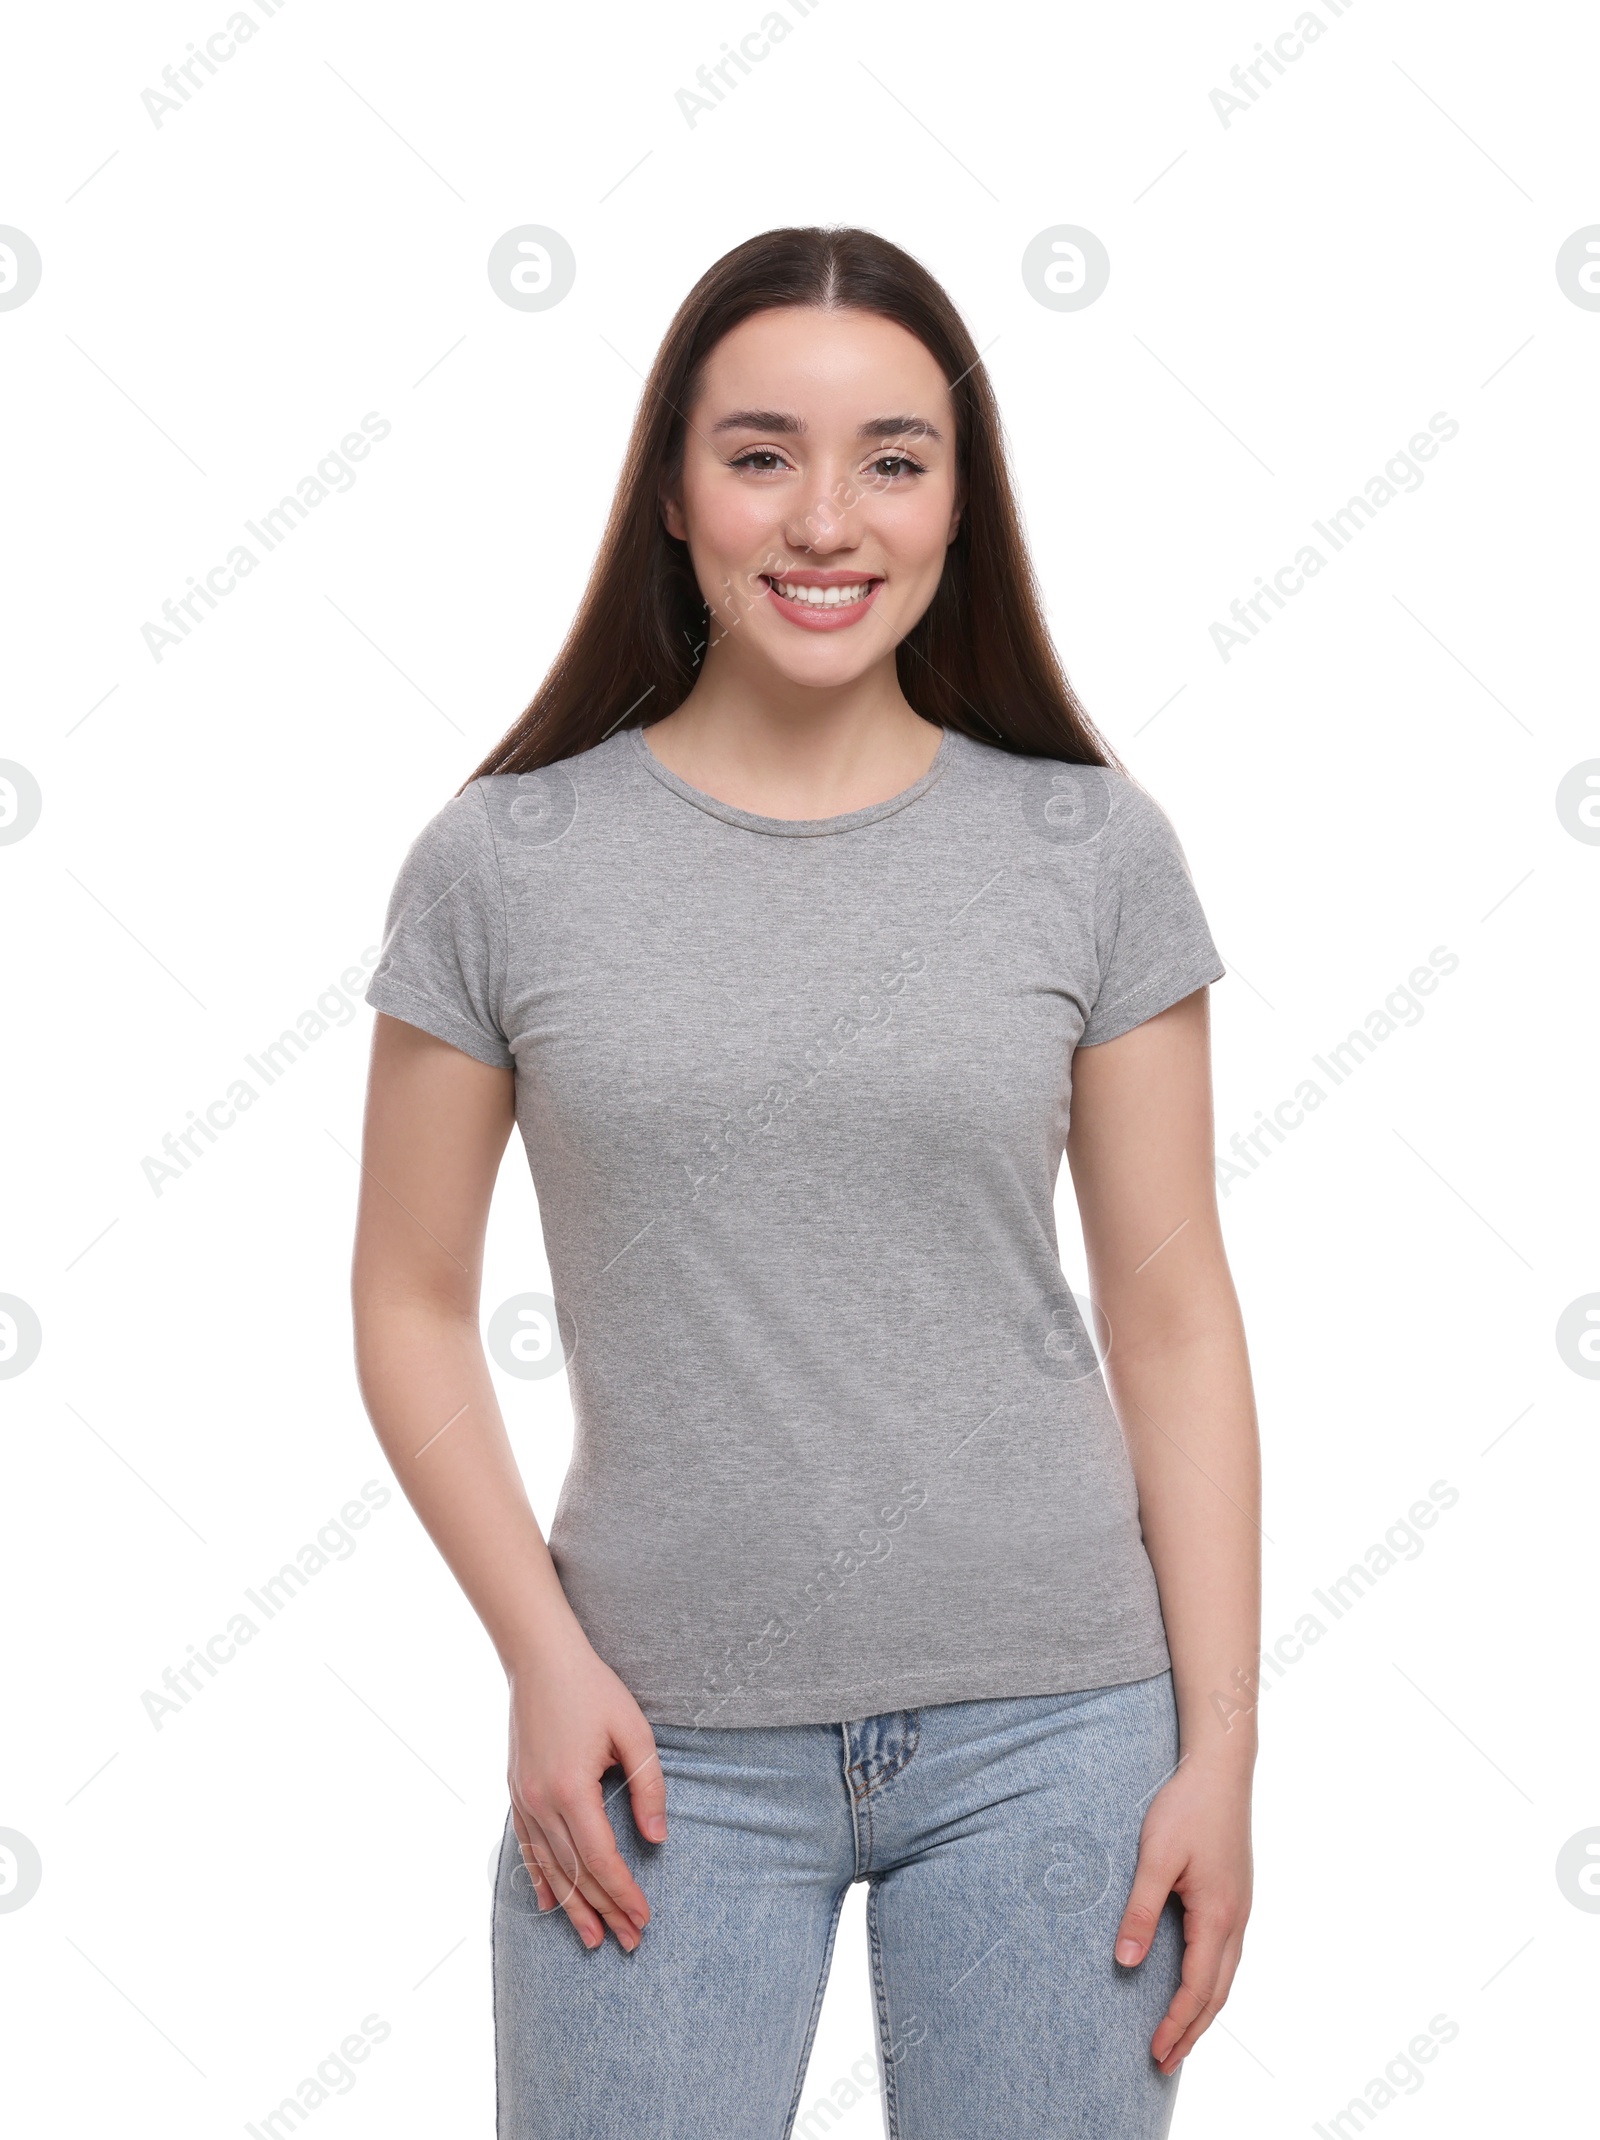 Photo of Woman wearing stylish gray T-shirt on white background